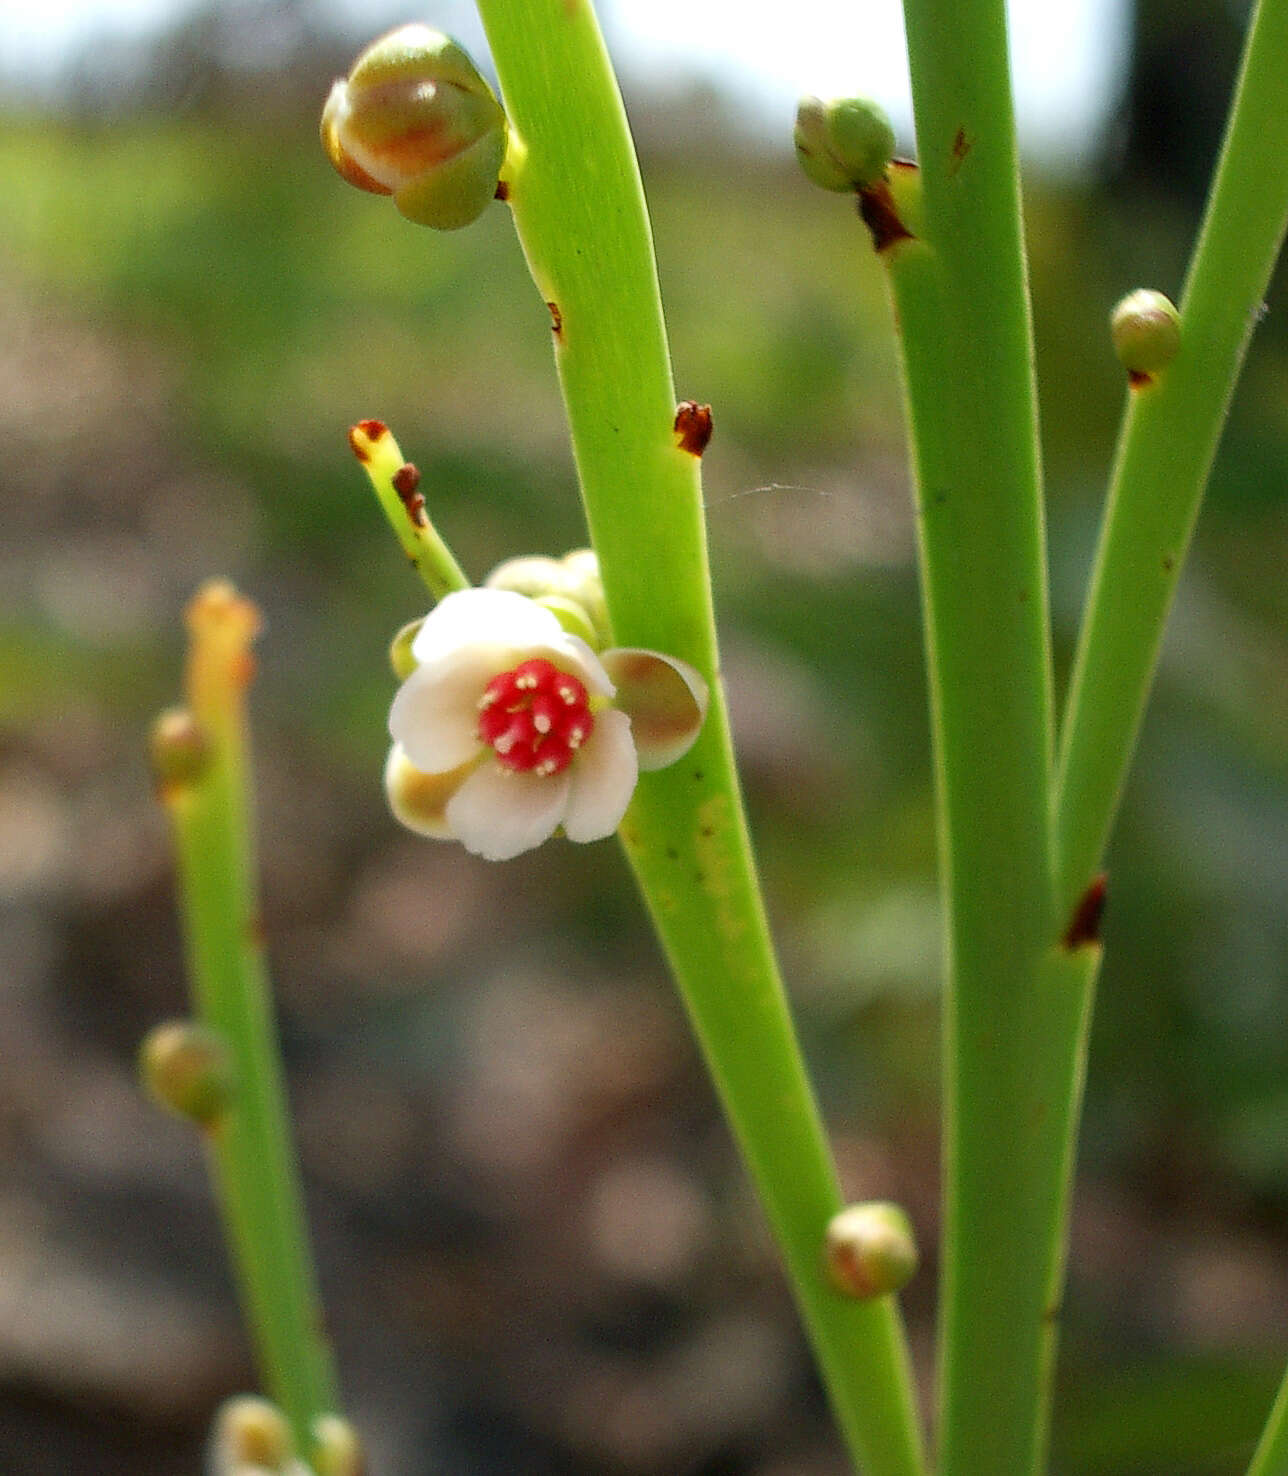 Image of Hibbertia persquamata subsp. persquamata